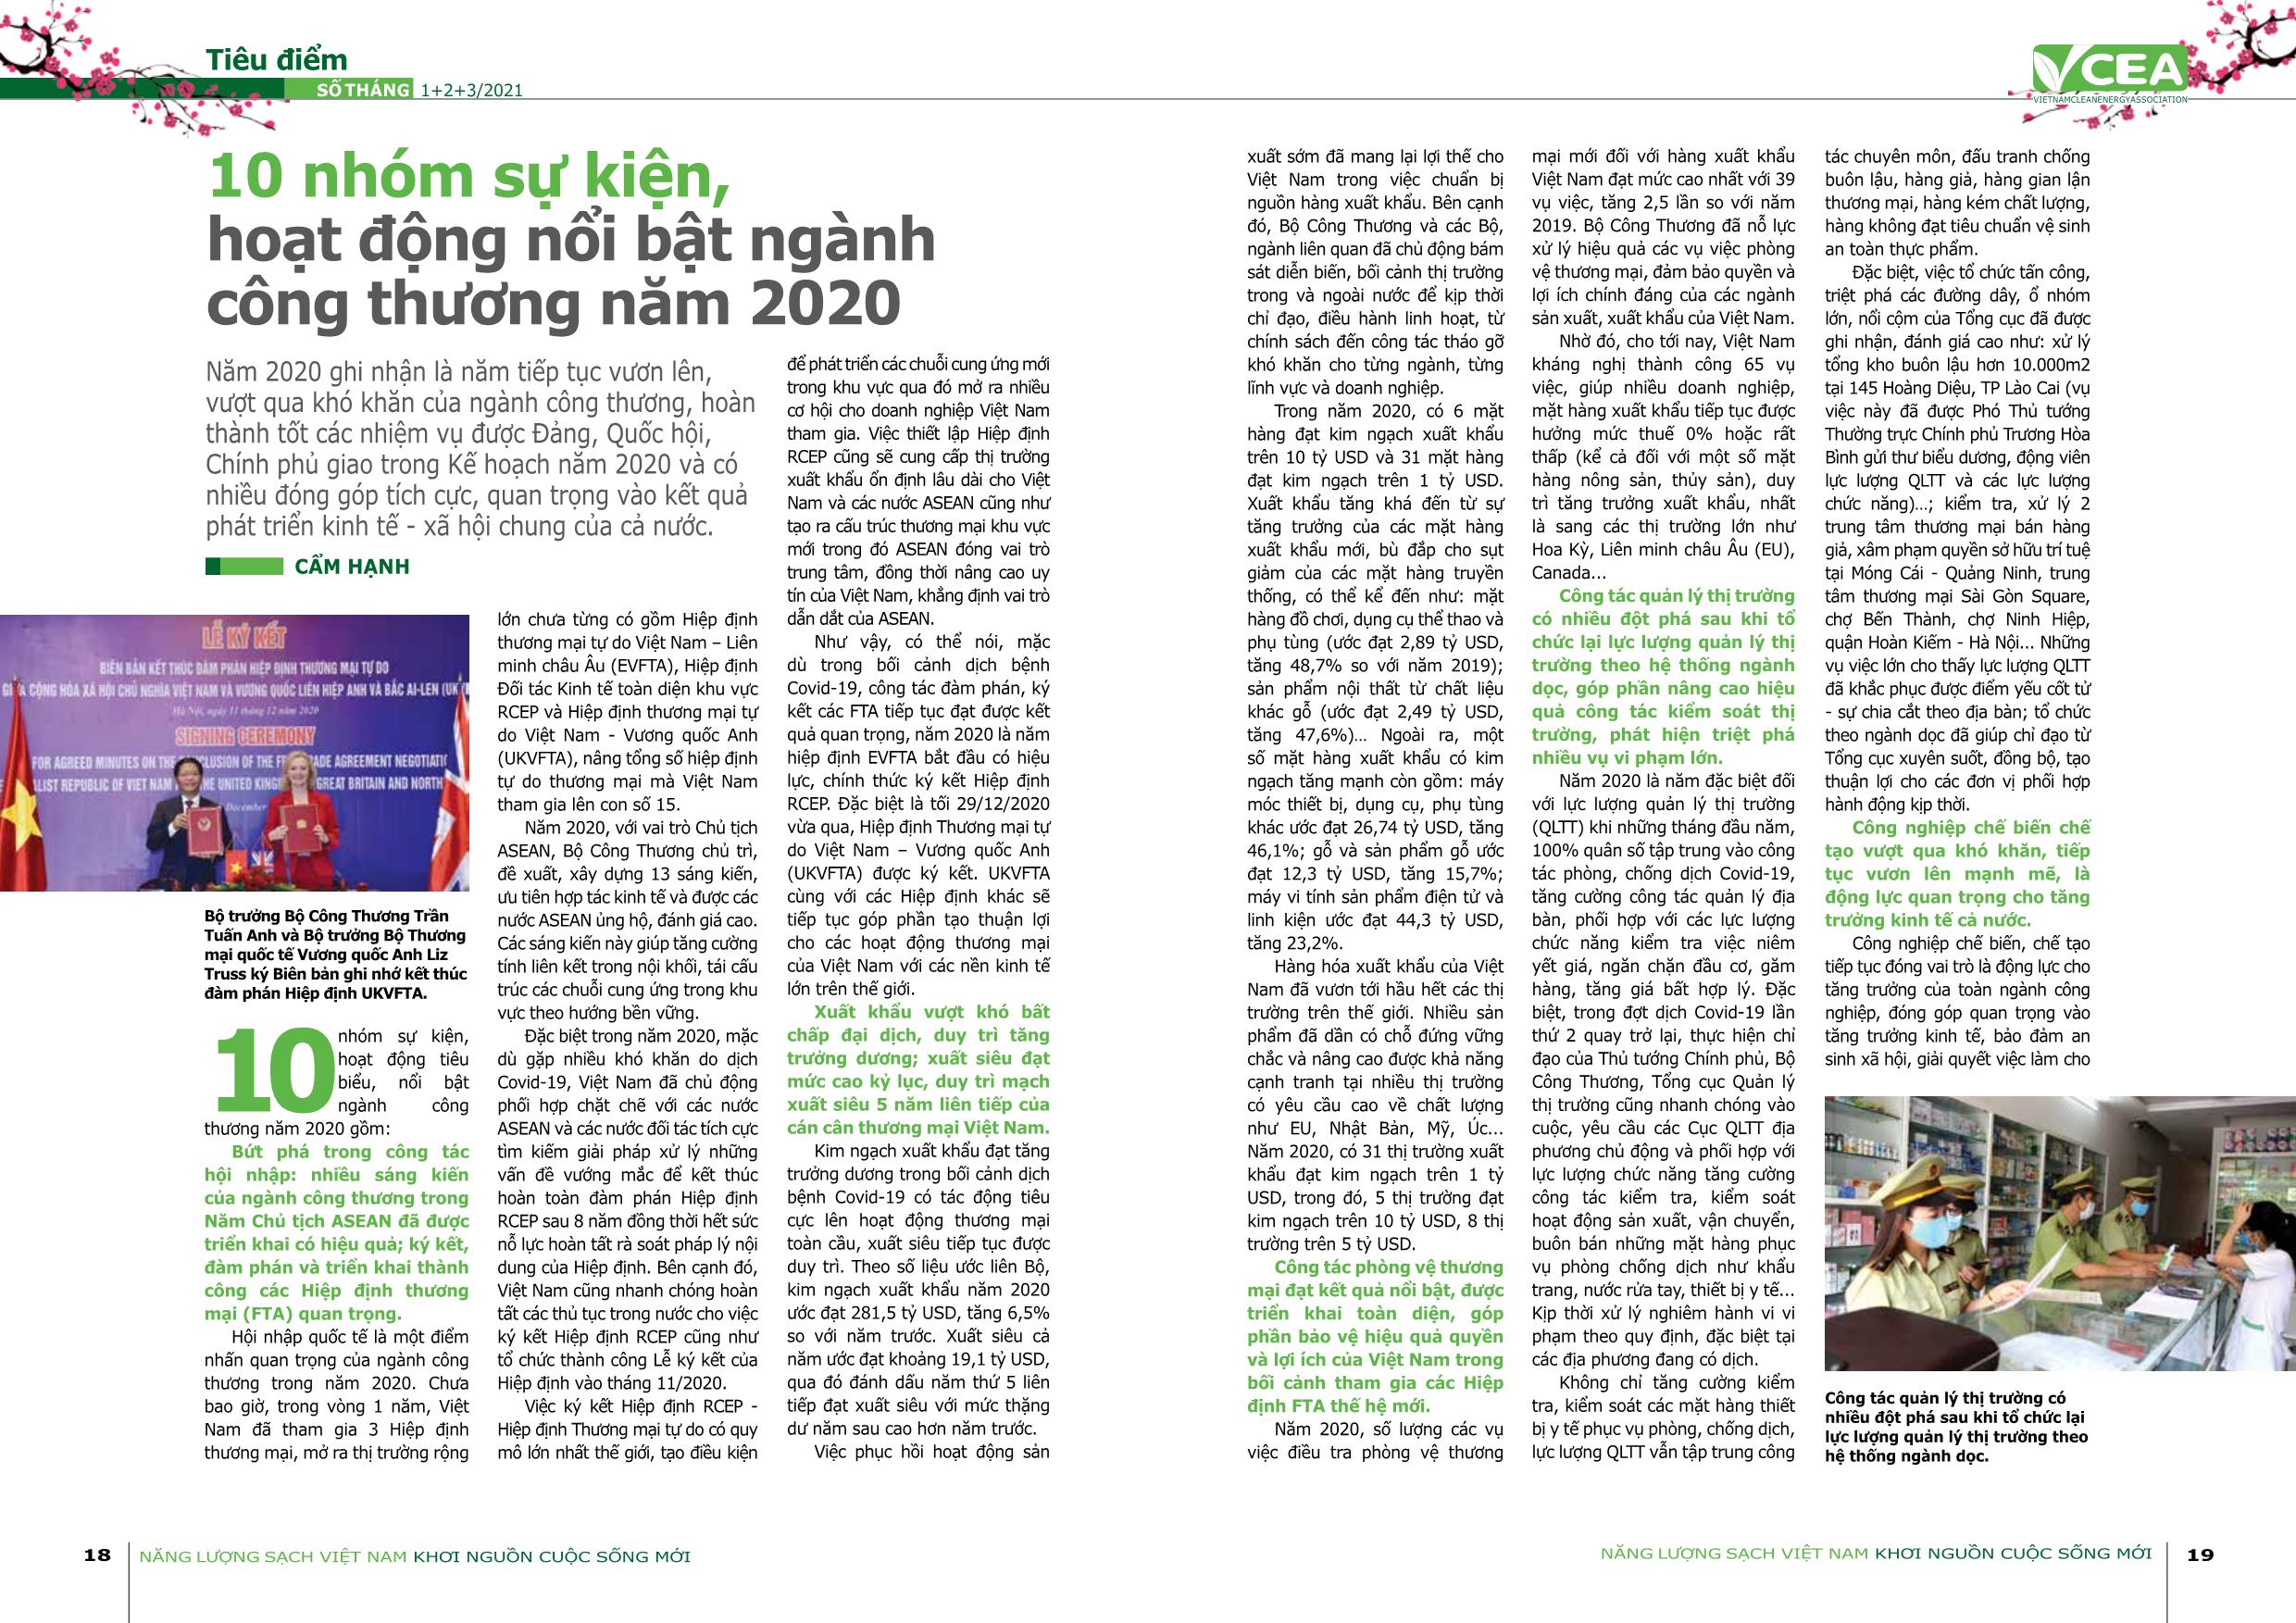 Tạp chí Năng lượng sạch Việt Nam - Số 47 - Tháng 1+2+3/2021 trang 10